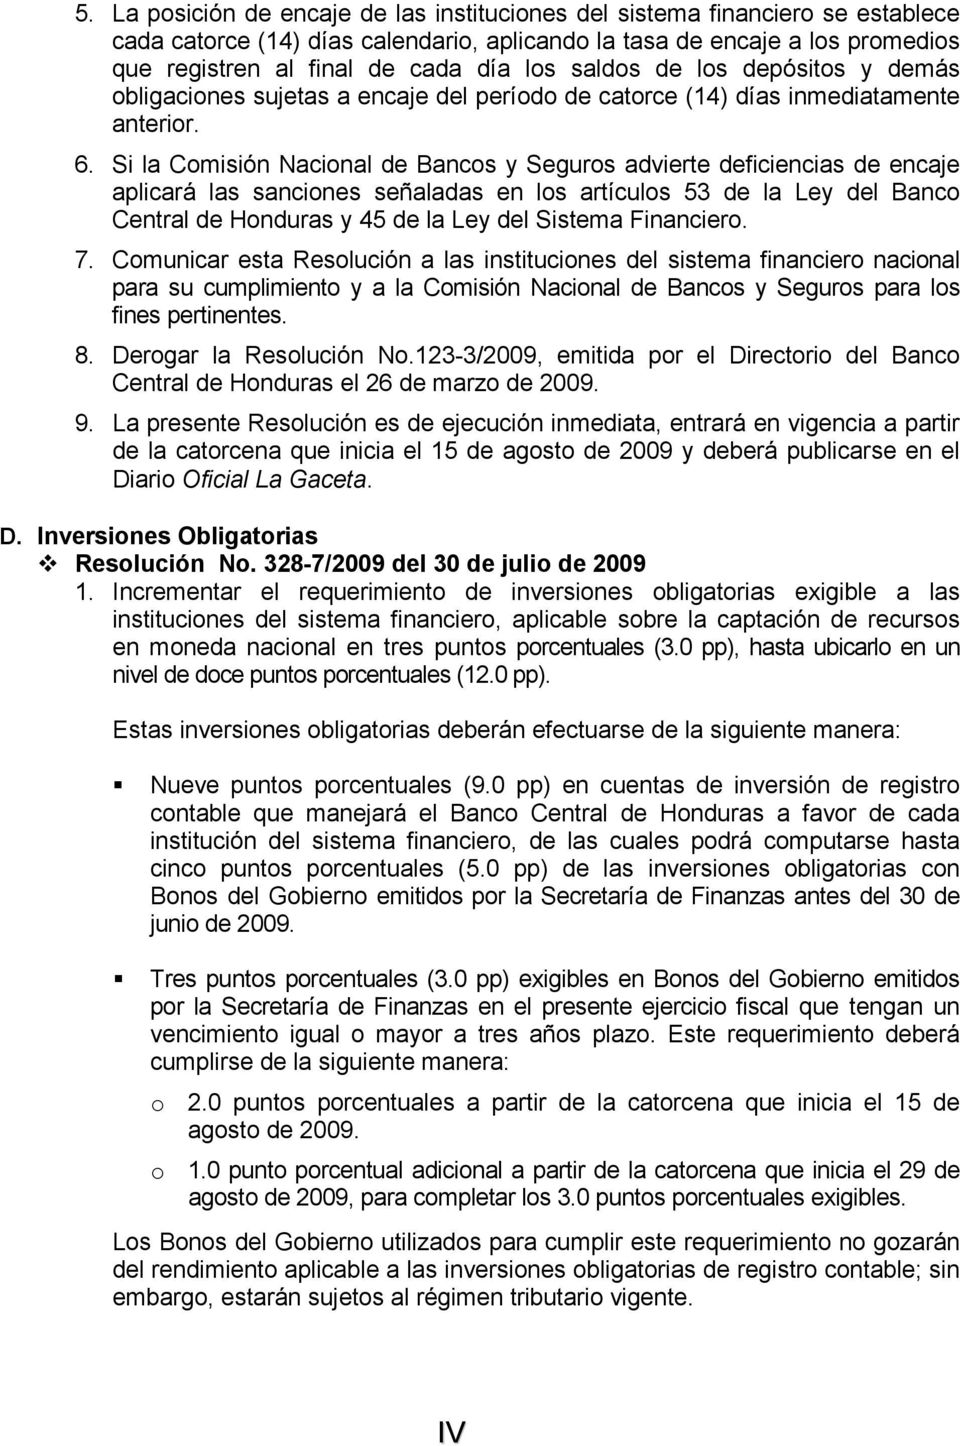 Si la Comisión Nacional de Bancos y Seguros advierte deficiencias de encaje aplicará las sanciones señaladas en los artículos 53 de la Ley del Banco Central de Honduras y 45 de la Ley del Sistema